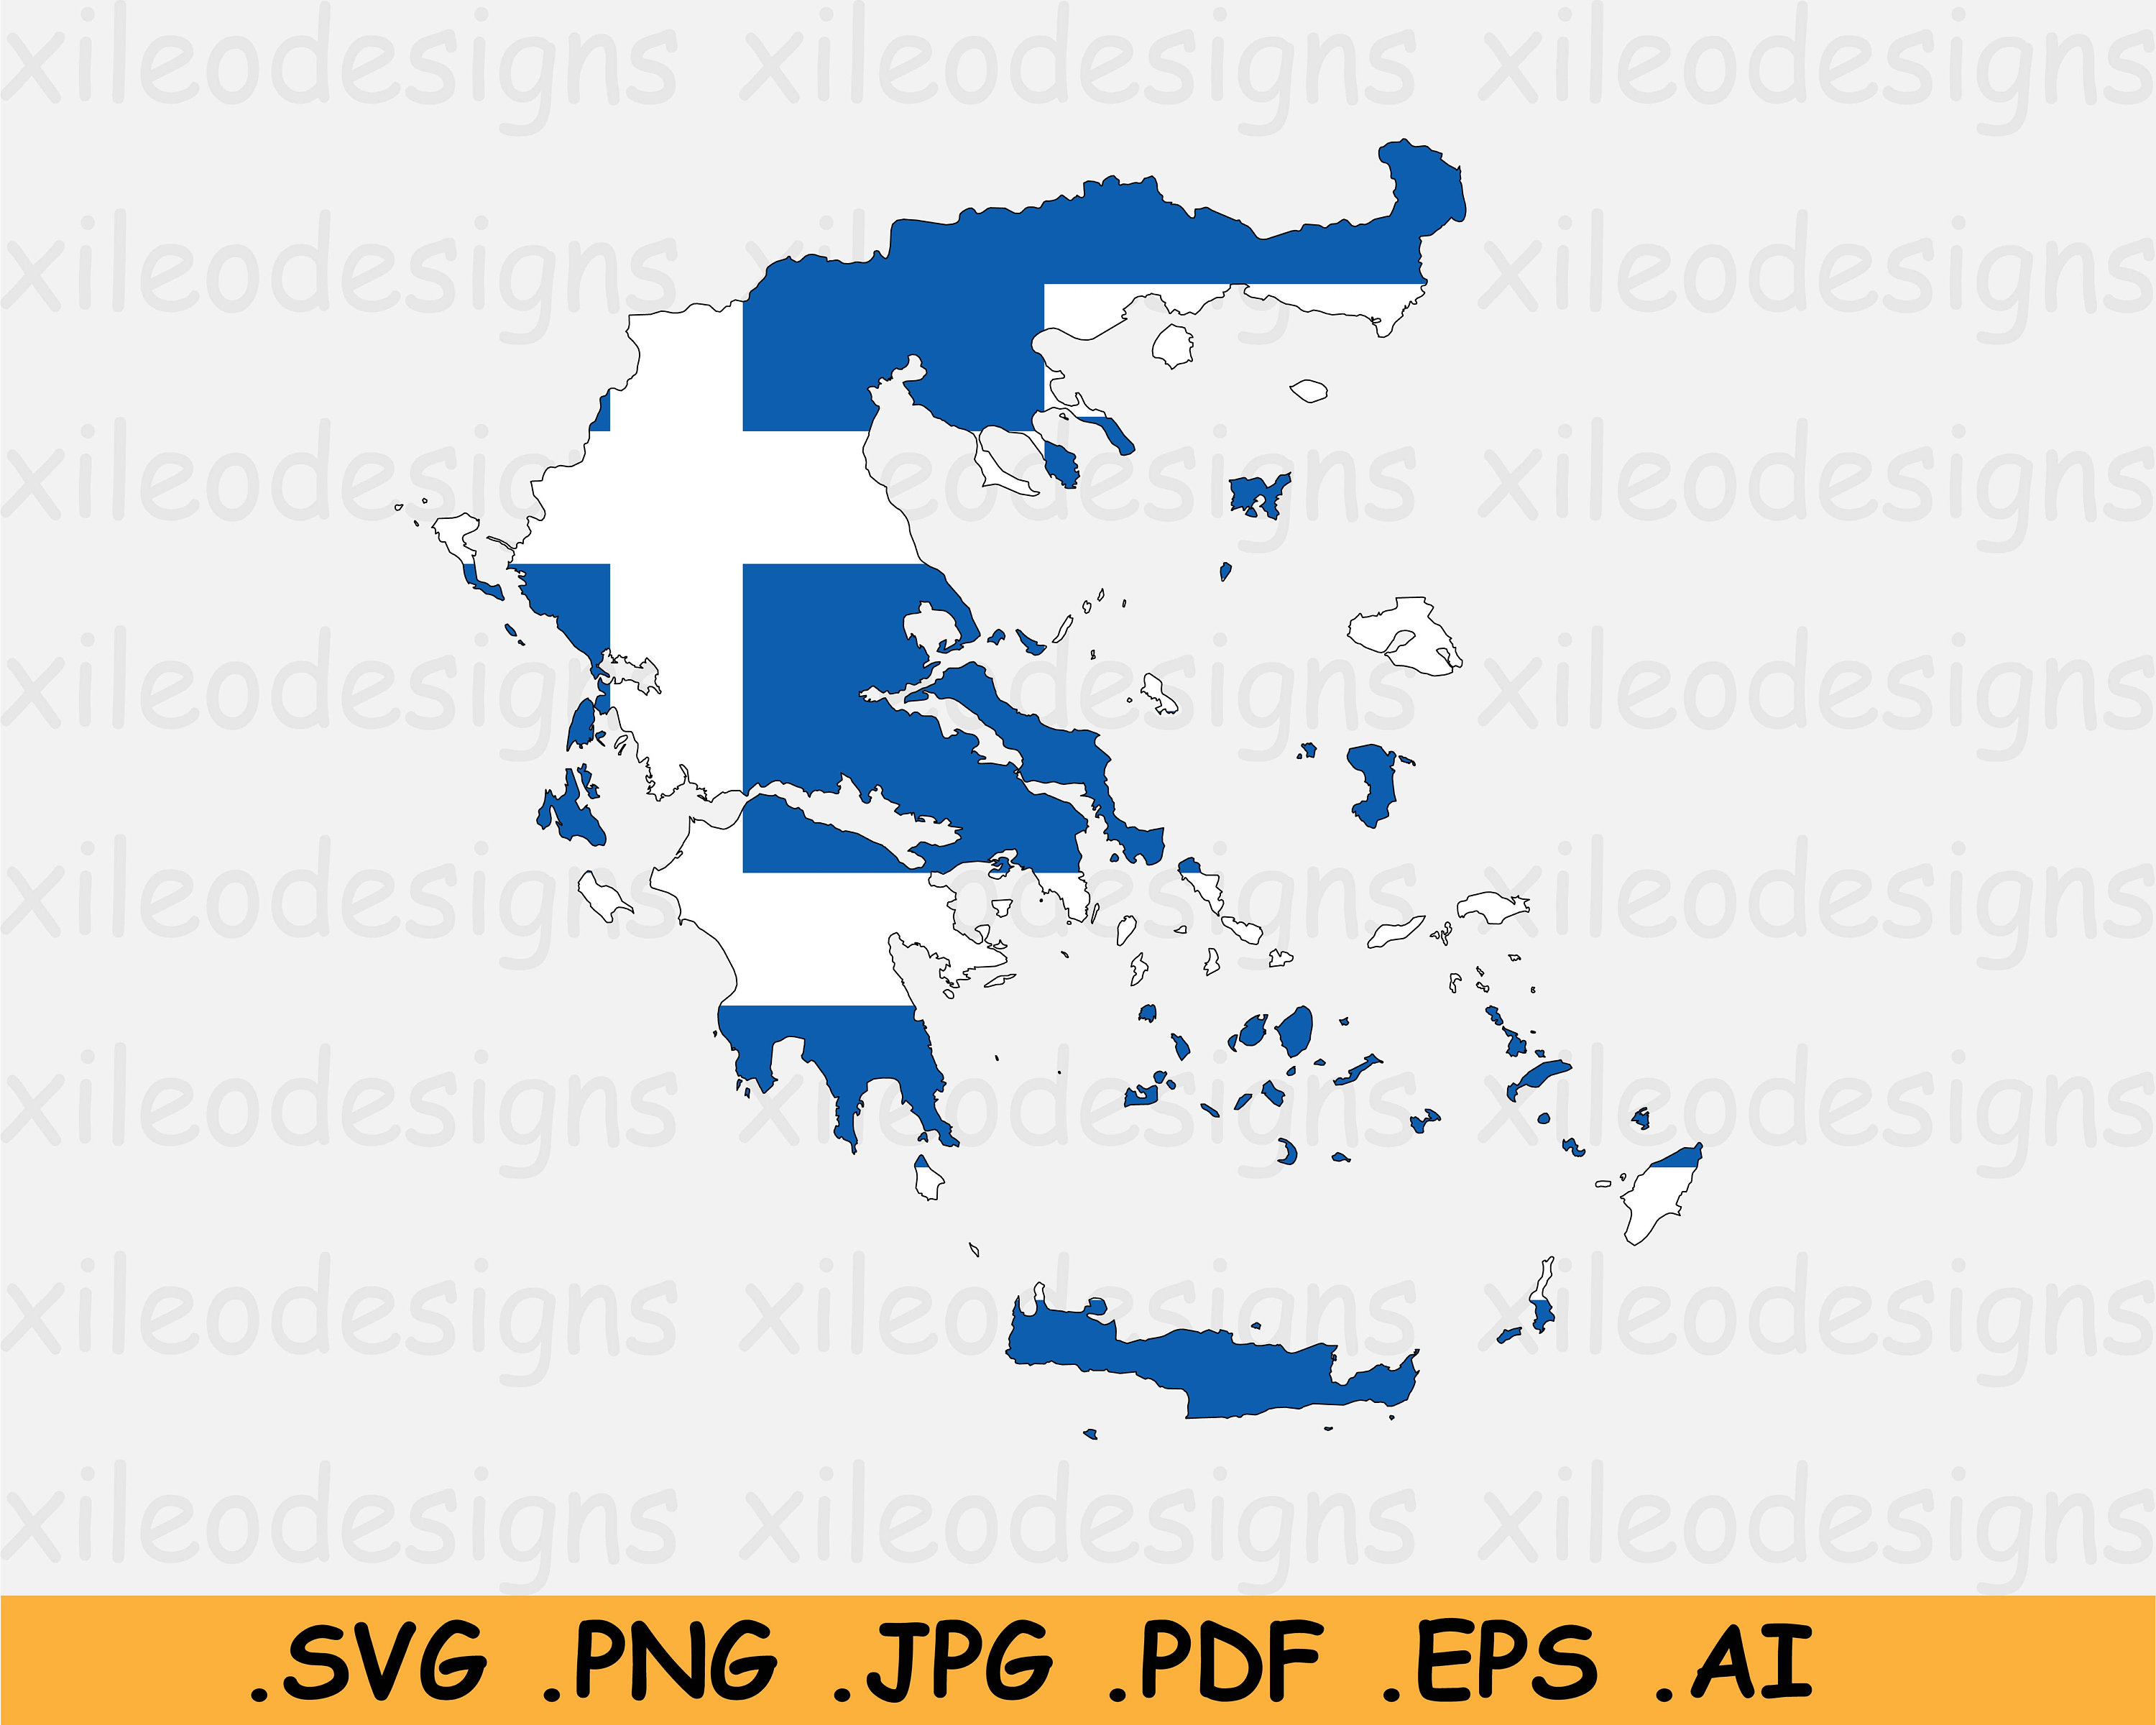 Griechenland-Flagge, Leere Karte Und Kartenzeiger Vektor Abbildung -  Illustration von land, auslegung: 151702013